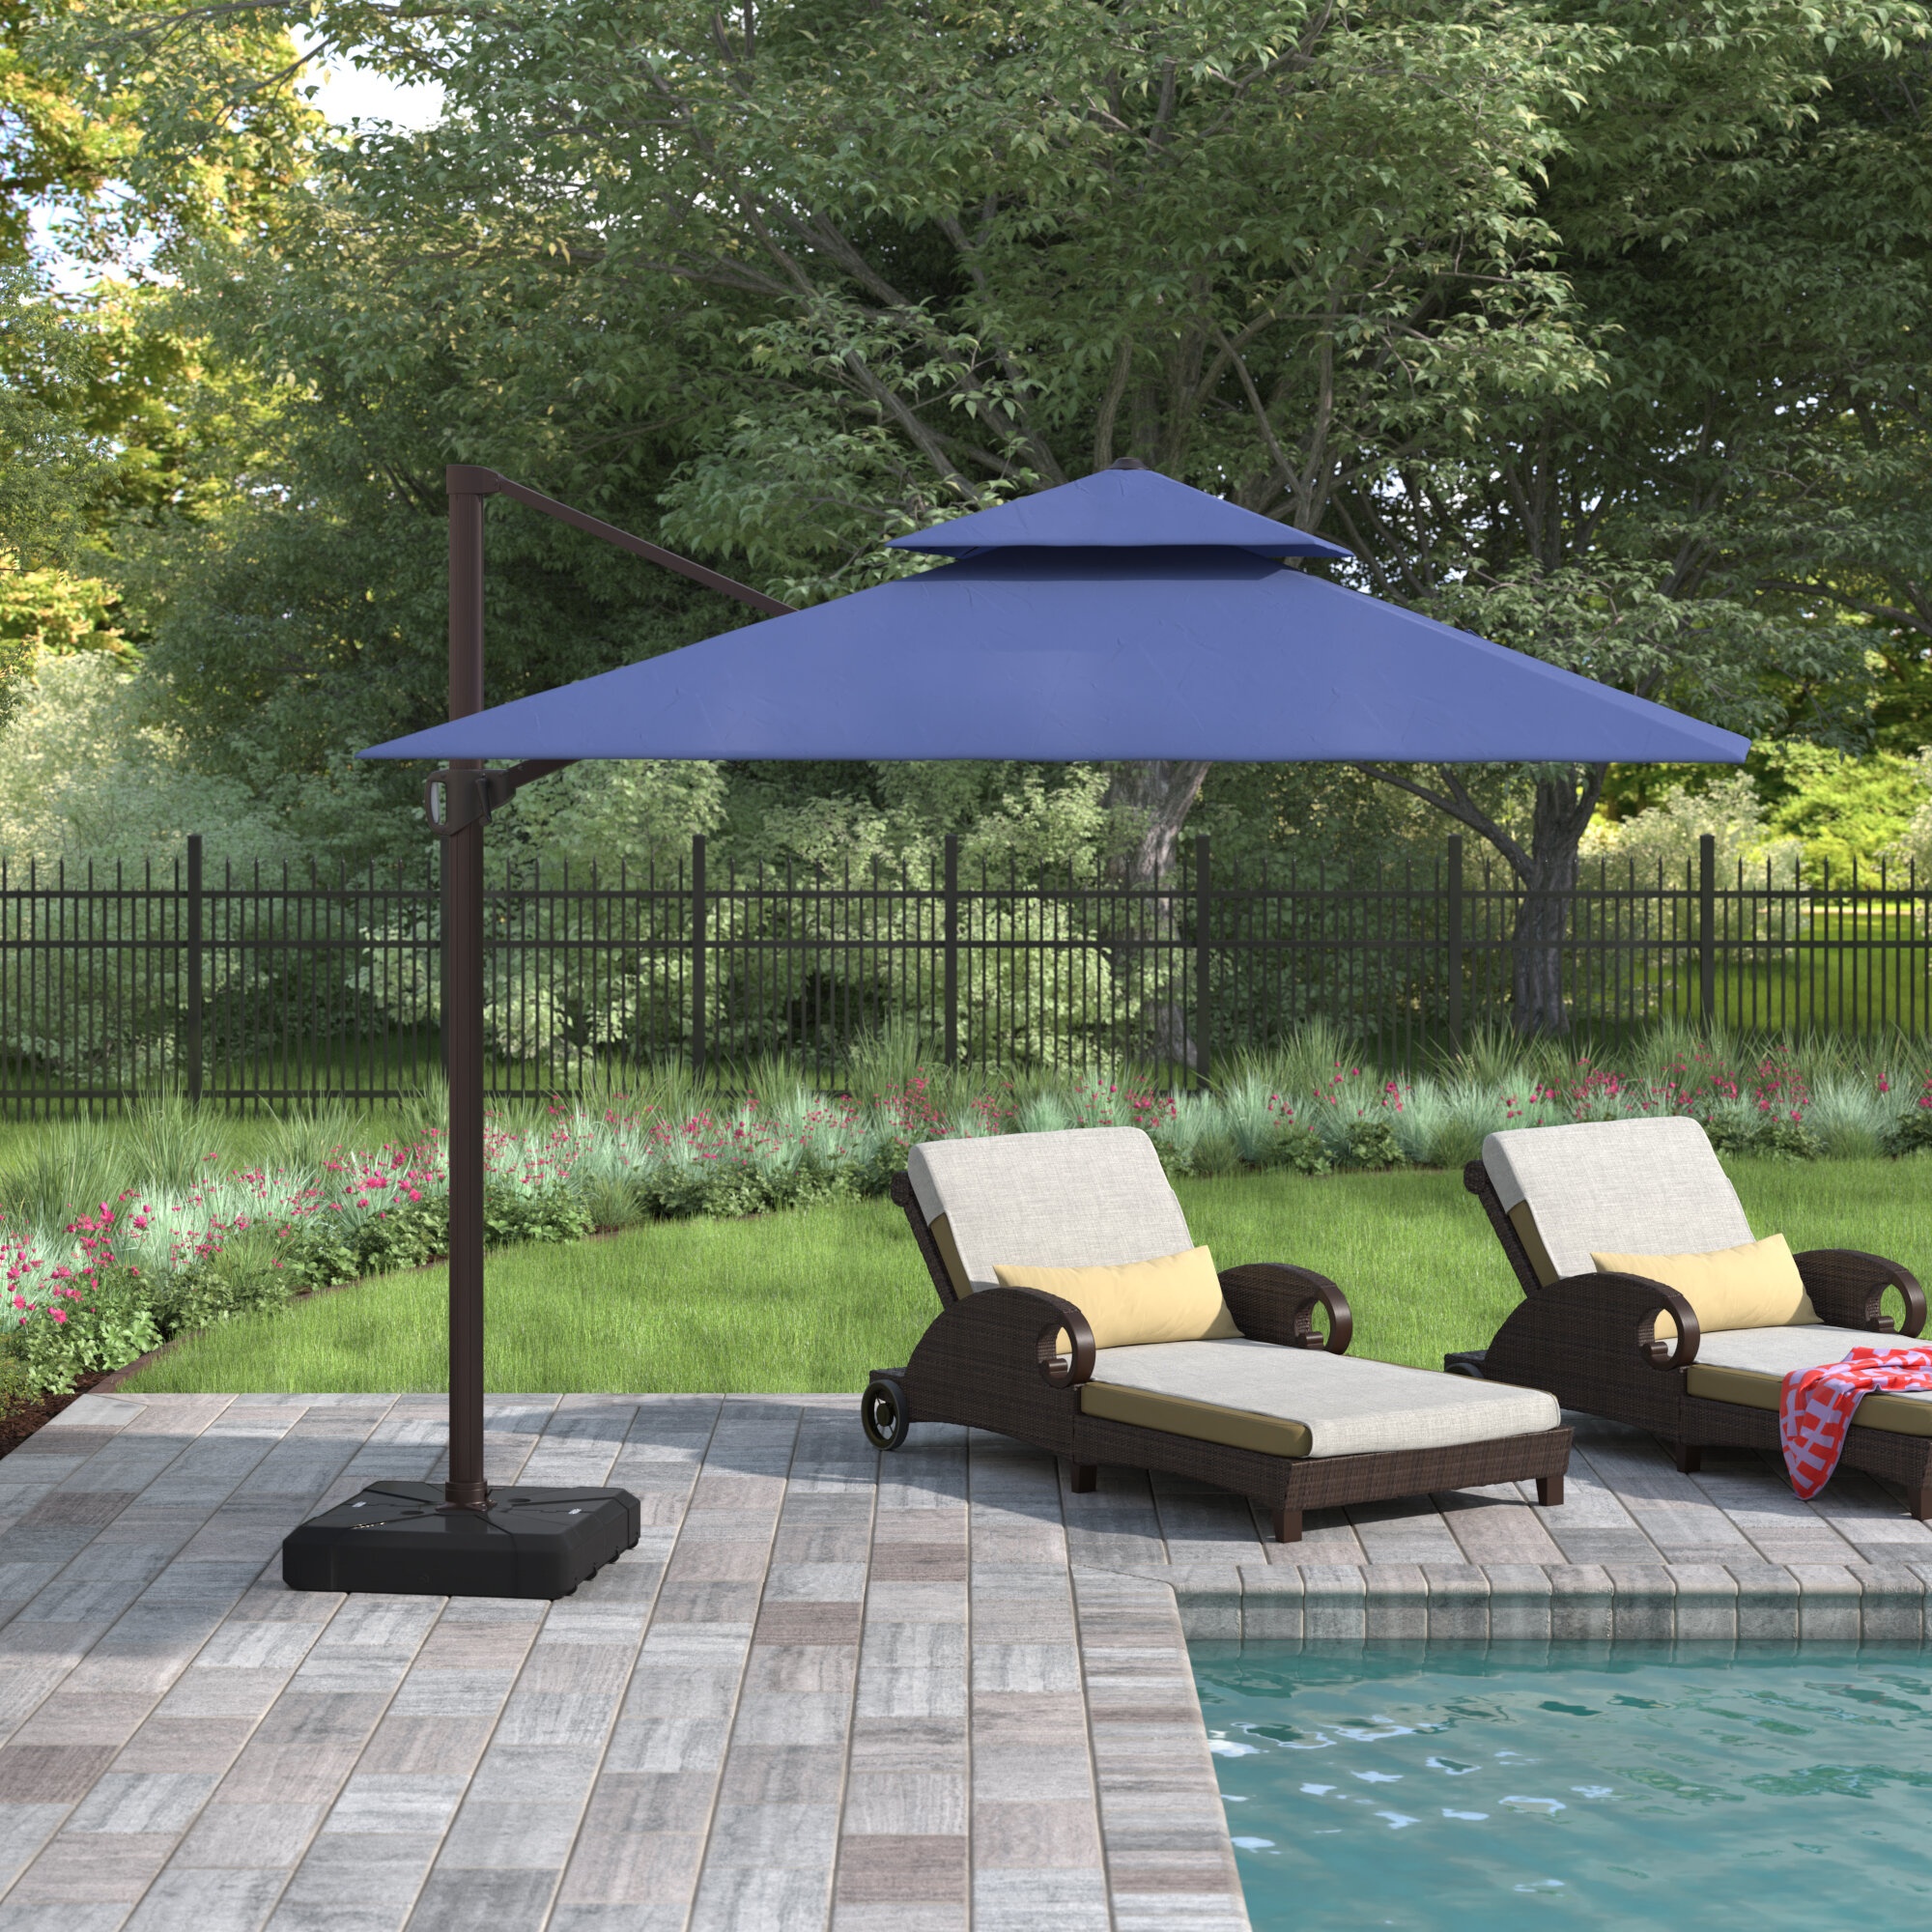 Black Parasol Outdoor Canopy Patio Garden Umbrella Cover Cantilever Sun Shade 